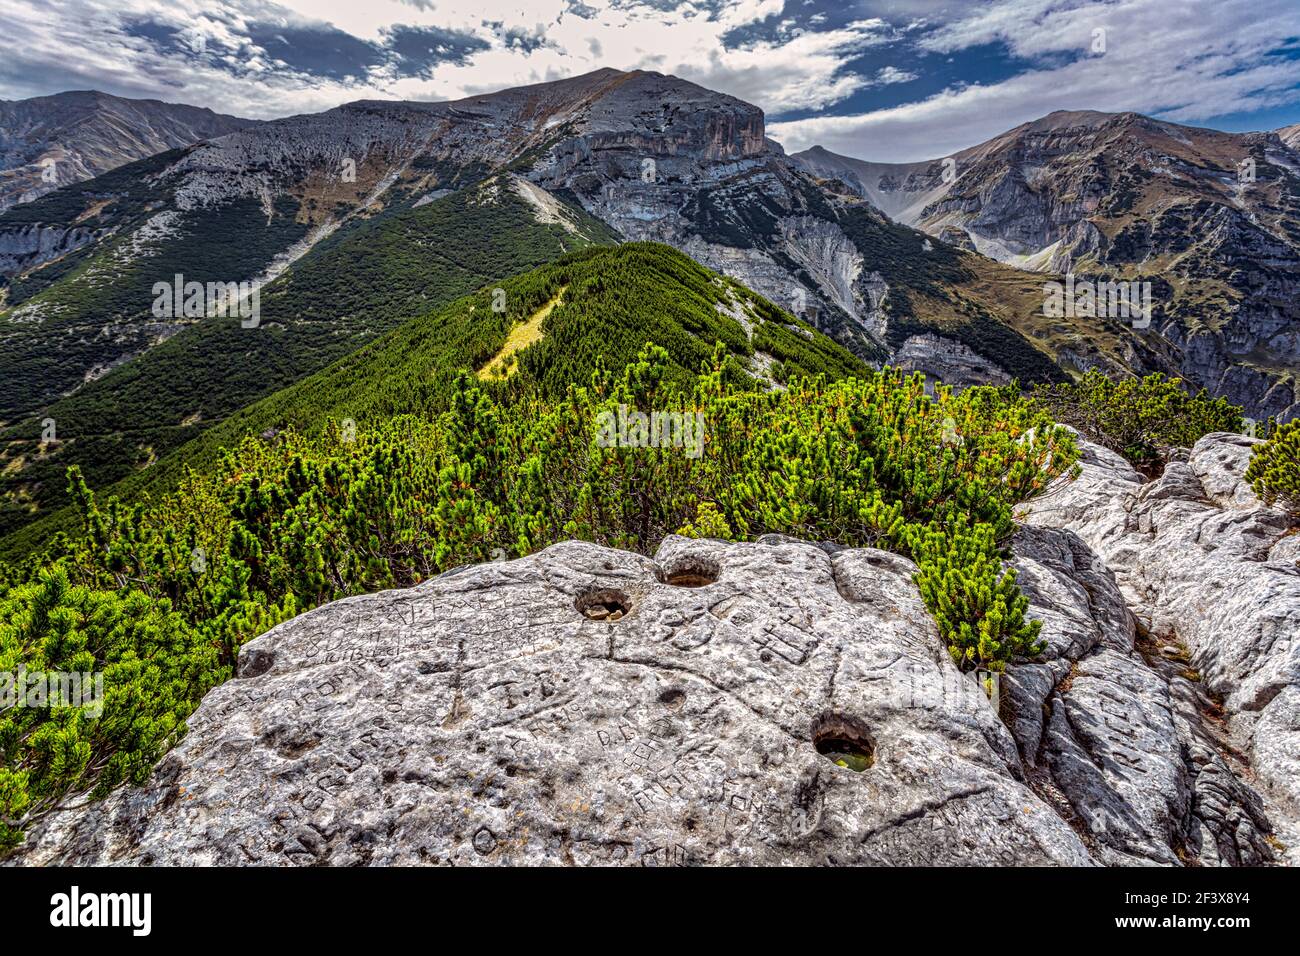 gravures faites à la main sur la pierre des brigands de montagne. Parc national de Maiella, Abruzzes, Italie, Europa Banque D'Images